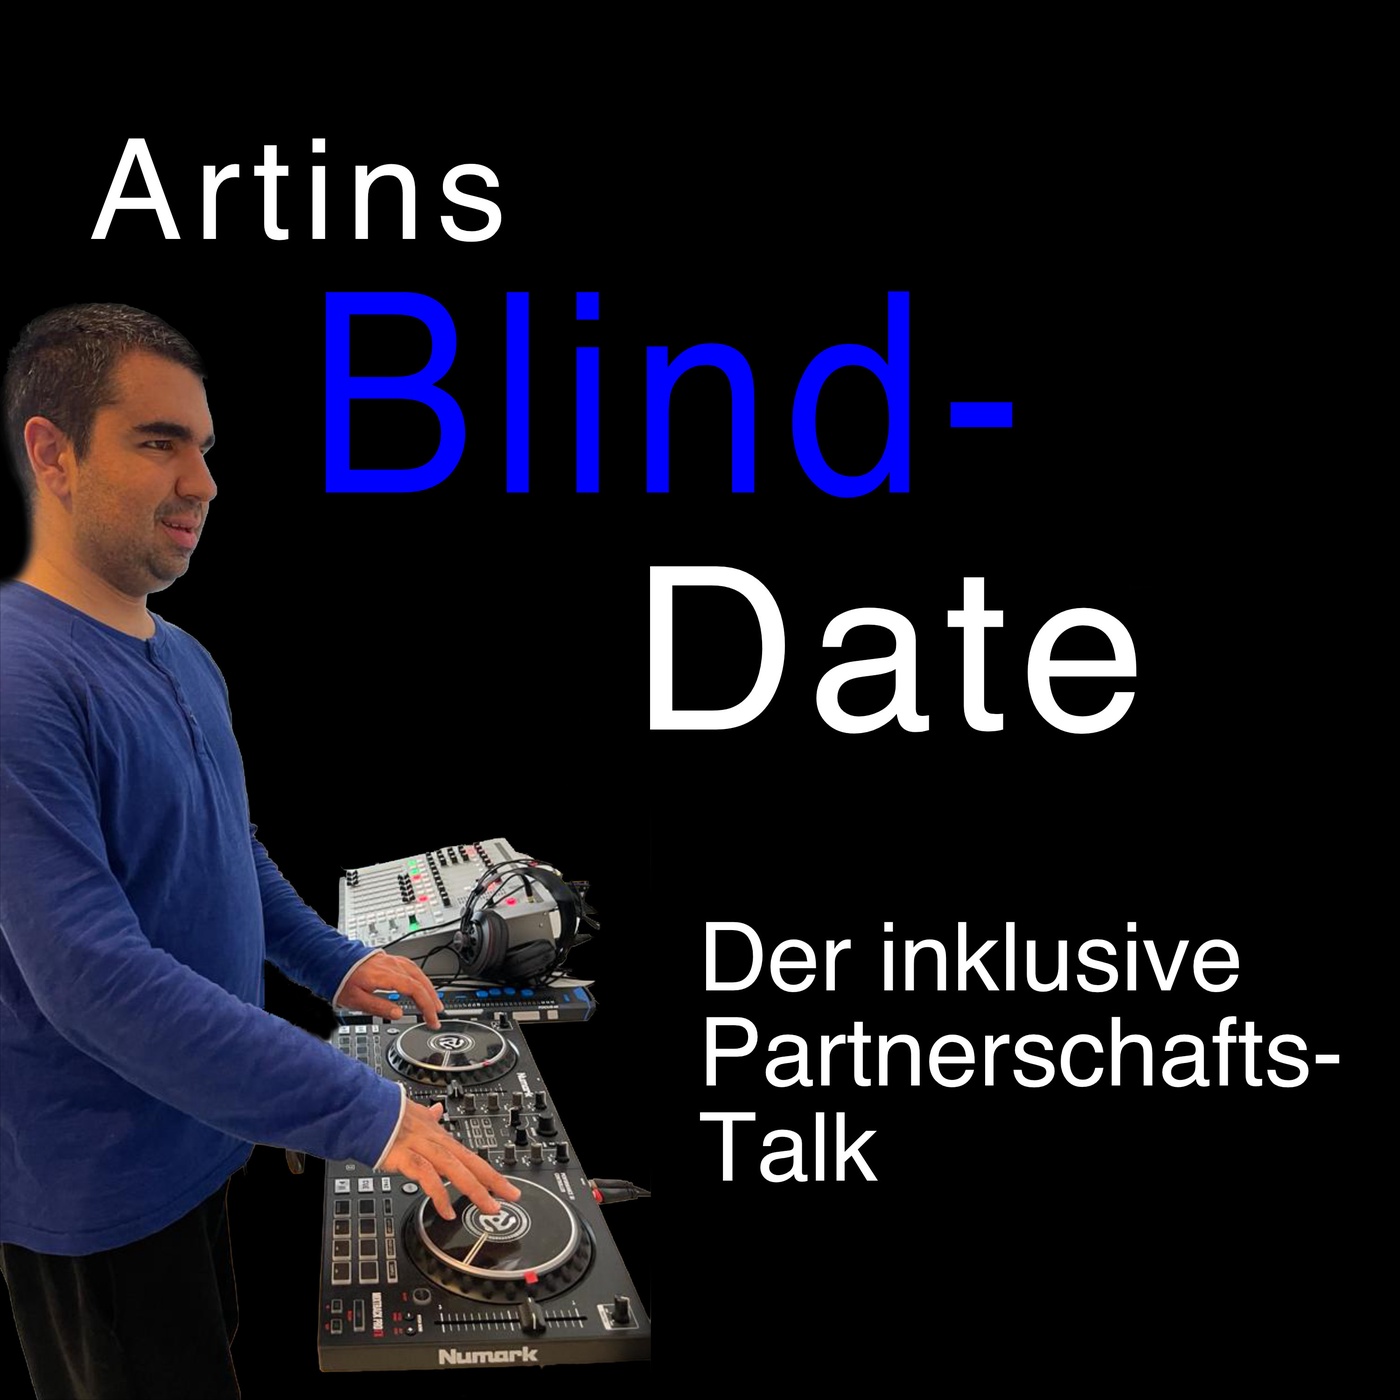 Artins Blind Date - der inklusive Partnerschaftstalk